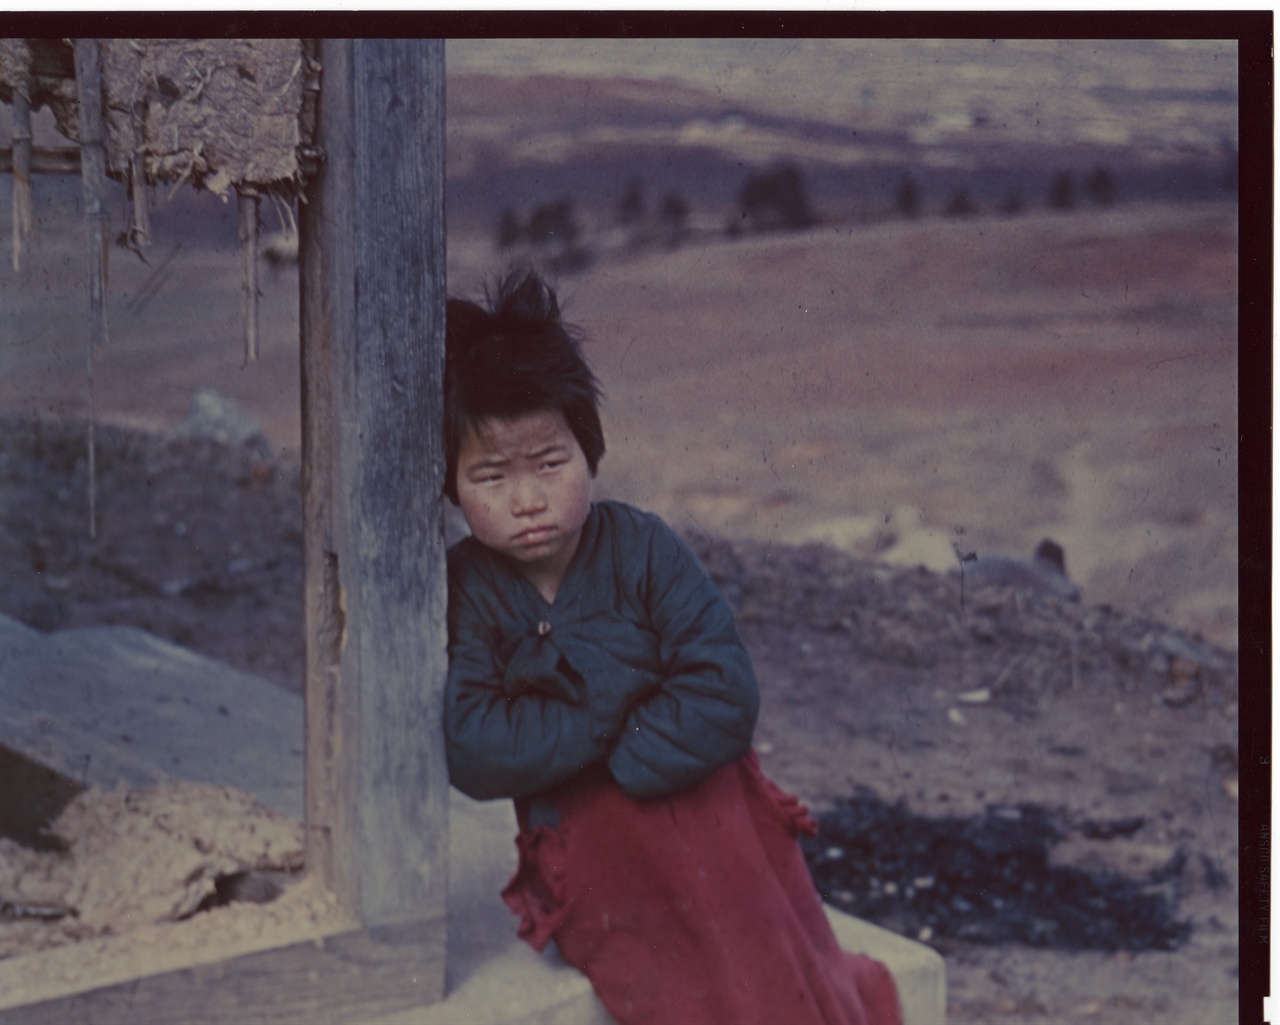  1951. 3. 1. 전주, 한 소녀가 전란으로 허물어진 집 섬돌에 앉아서 배고픔과 추위에 떨고 있다. 